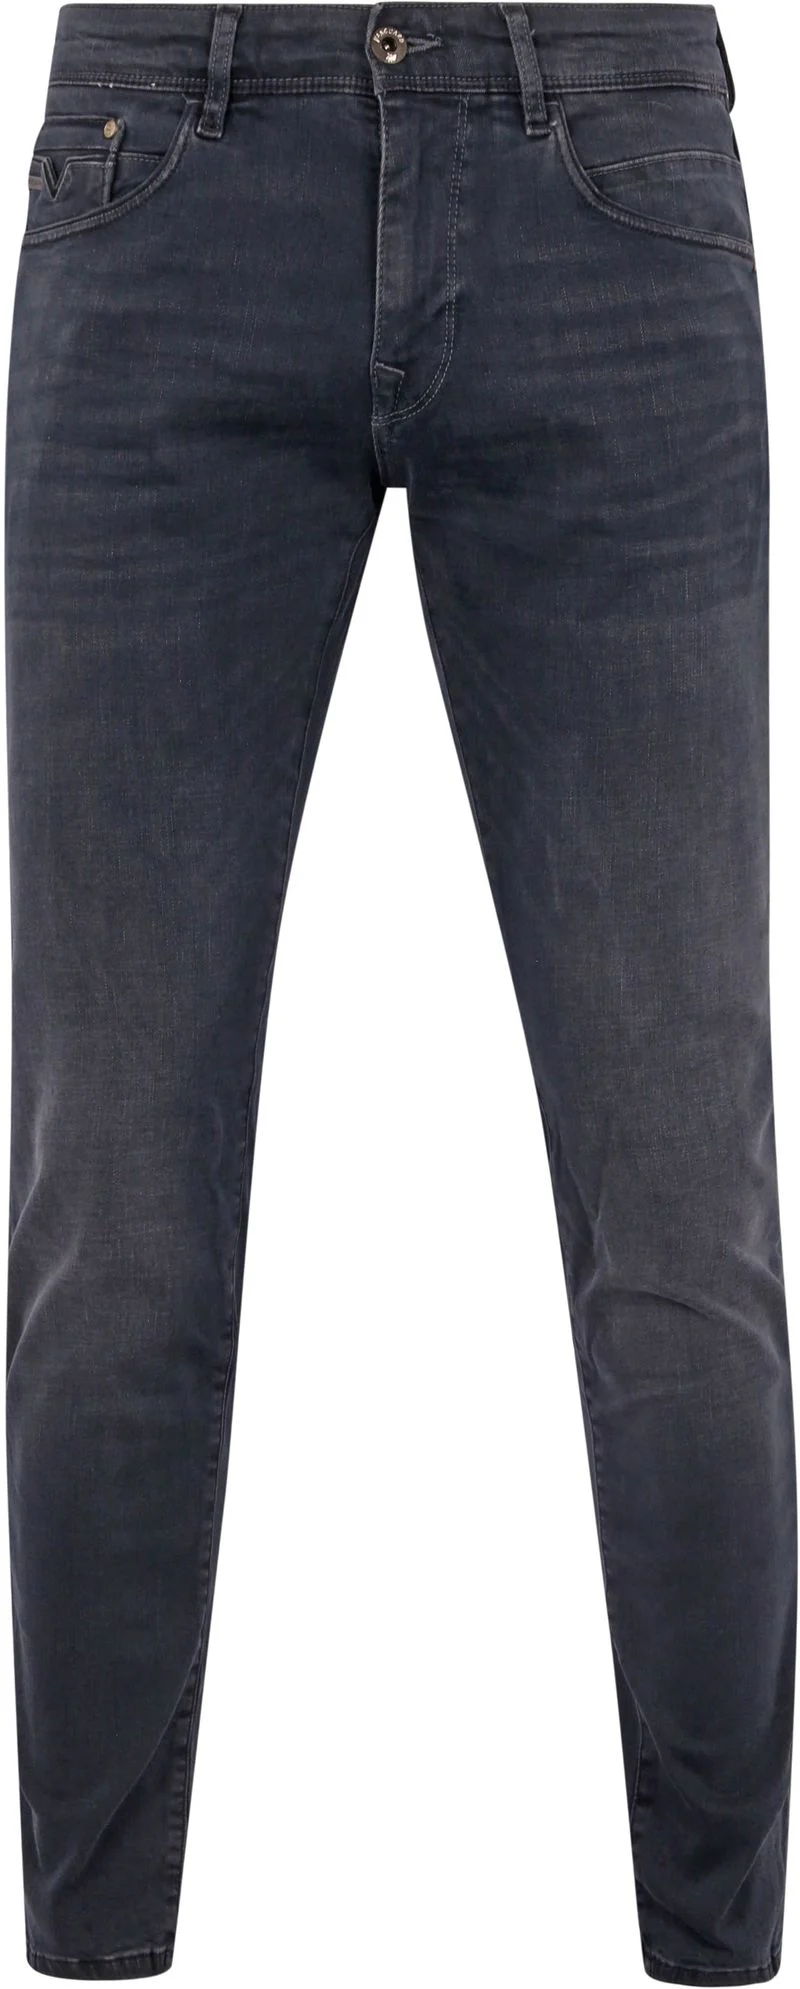 Vanguard Jeans V12 Rider Anthrazit ODB - Größe W 31 - L 34 günstig online kaufen